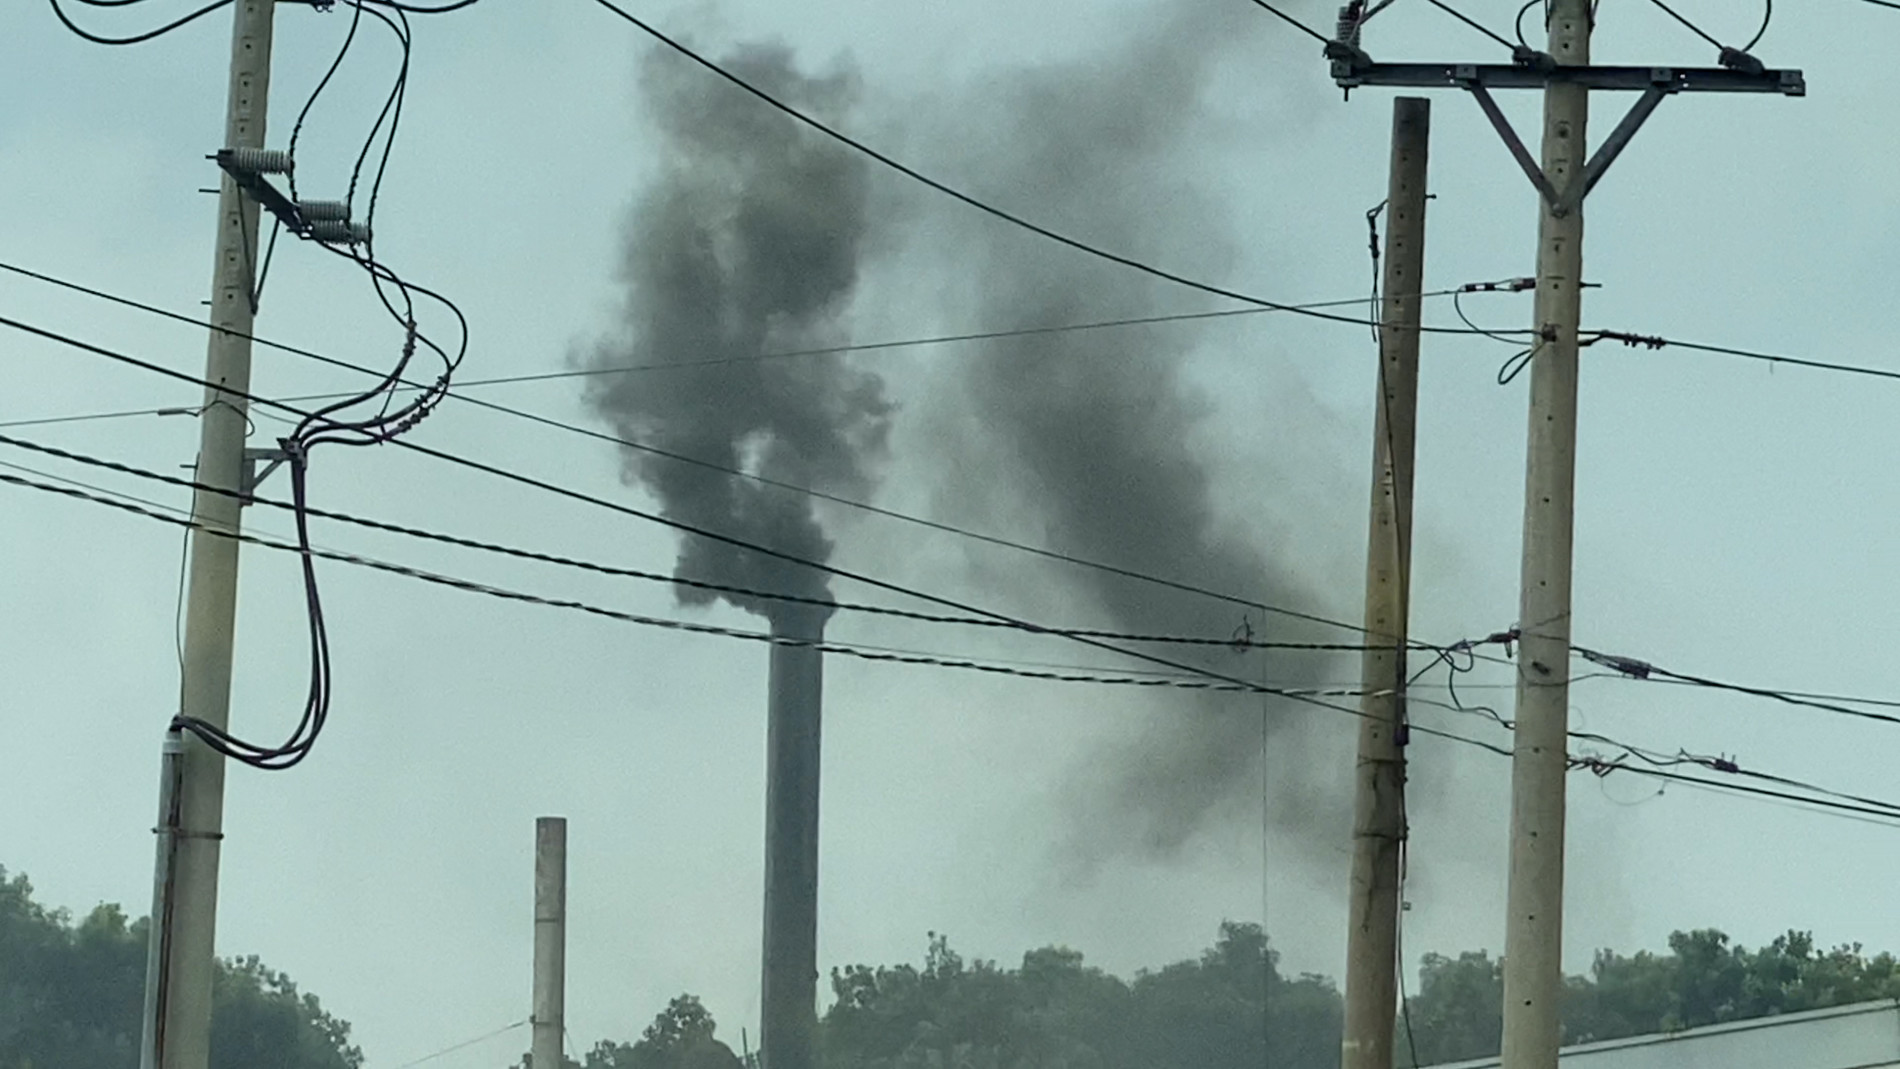 Bình Phước: Nhà máy khu công nghiệp vô tư xả khói đen khịt ra môi trường - Ảnh 2.